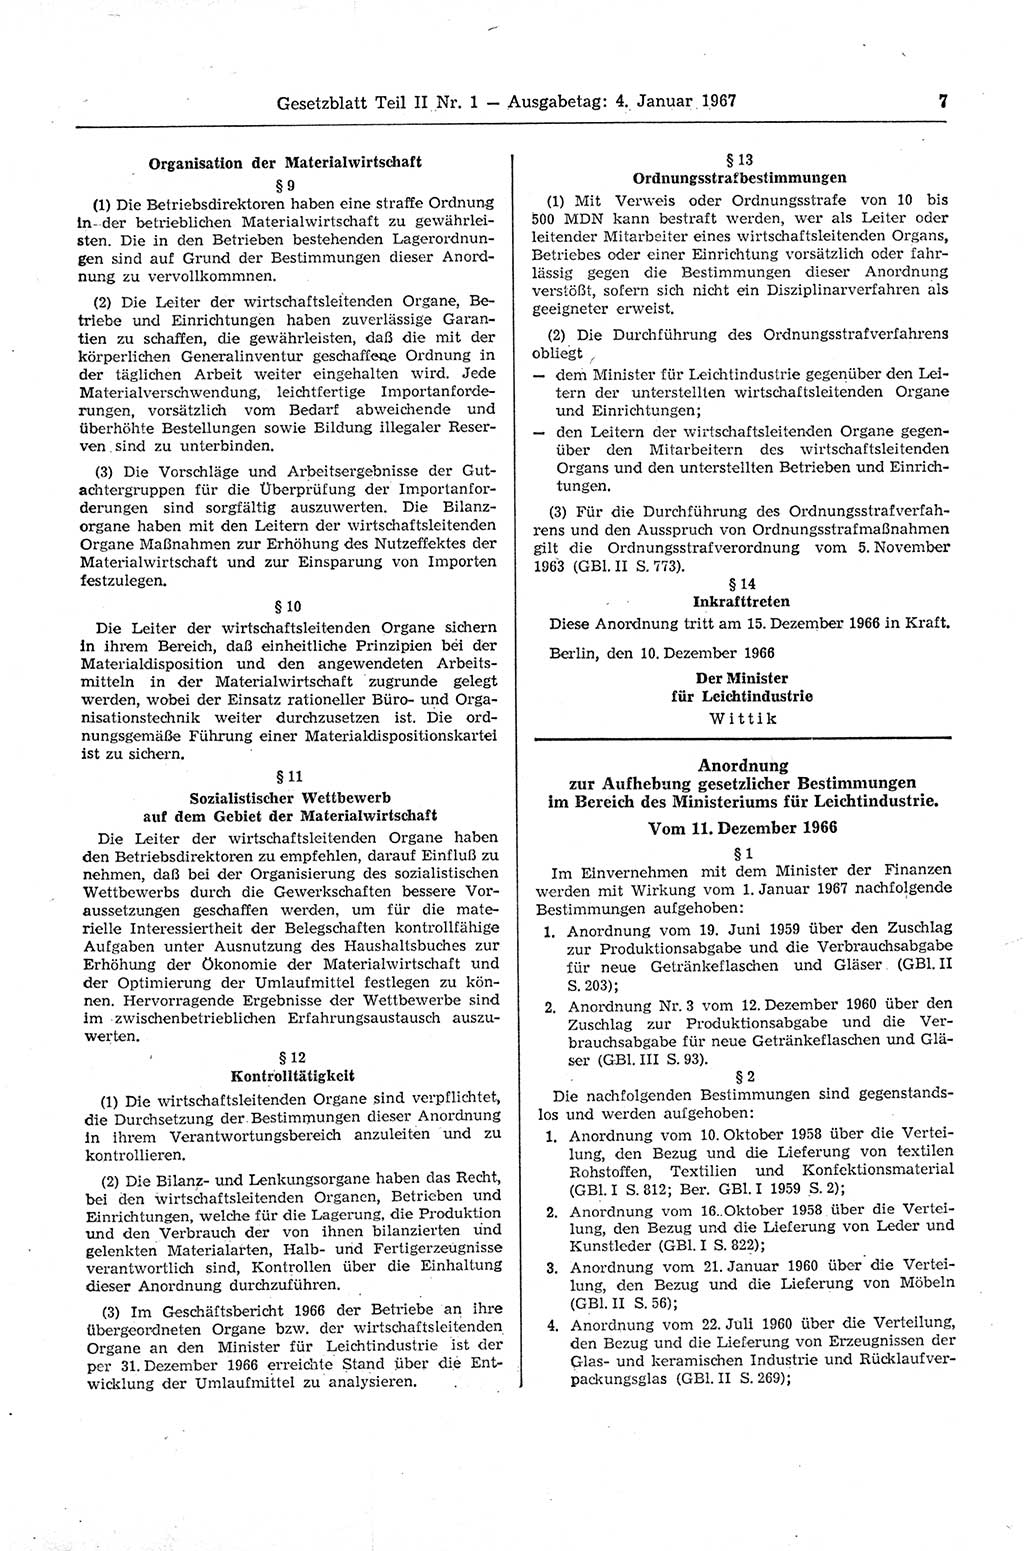 Gesetzblatt (GBl.) der Deutschen Demokratischen Republik (DDR) Teil ⅠⅠ 1967, Seite 7 (GBl. DDR ⅠⅠ 1967, S. 7)